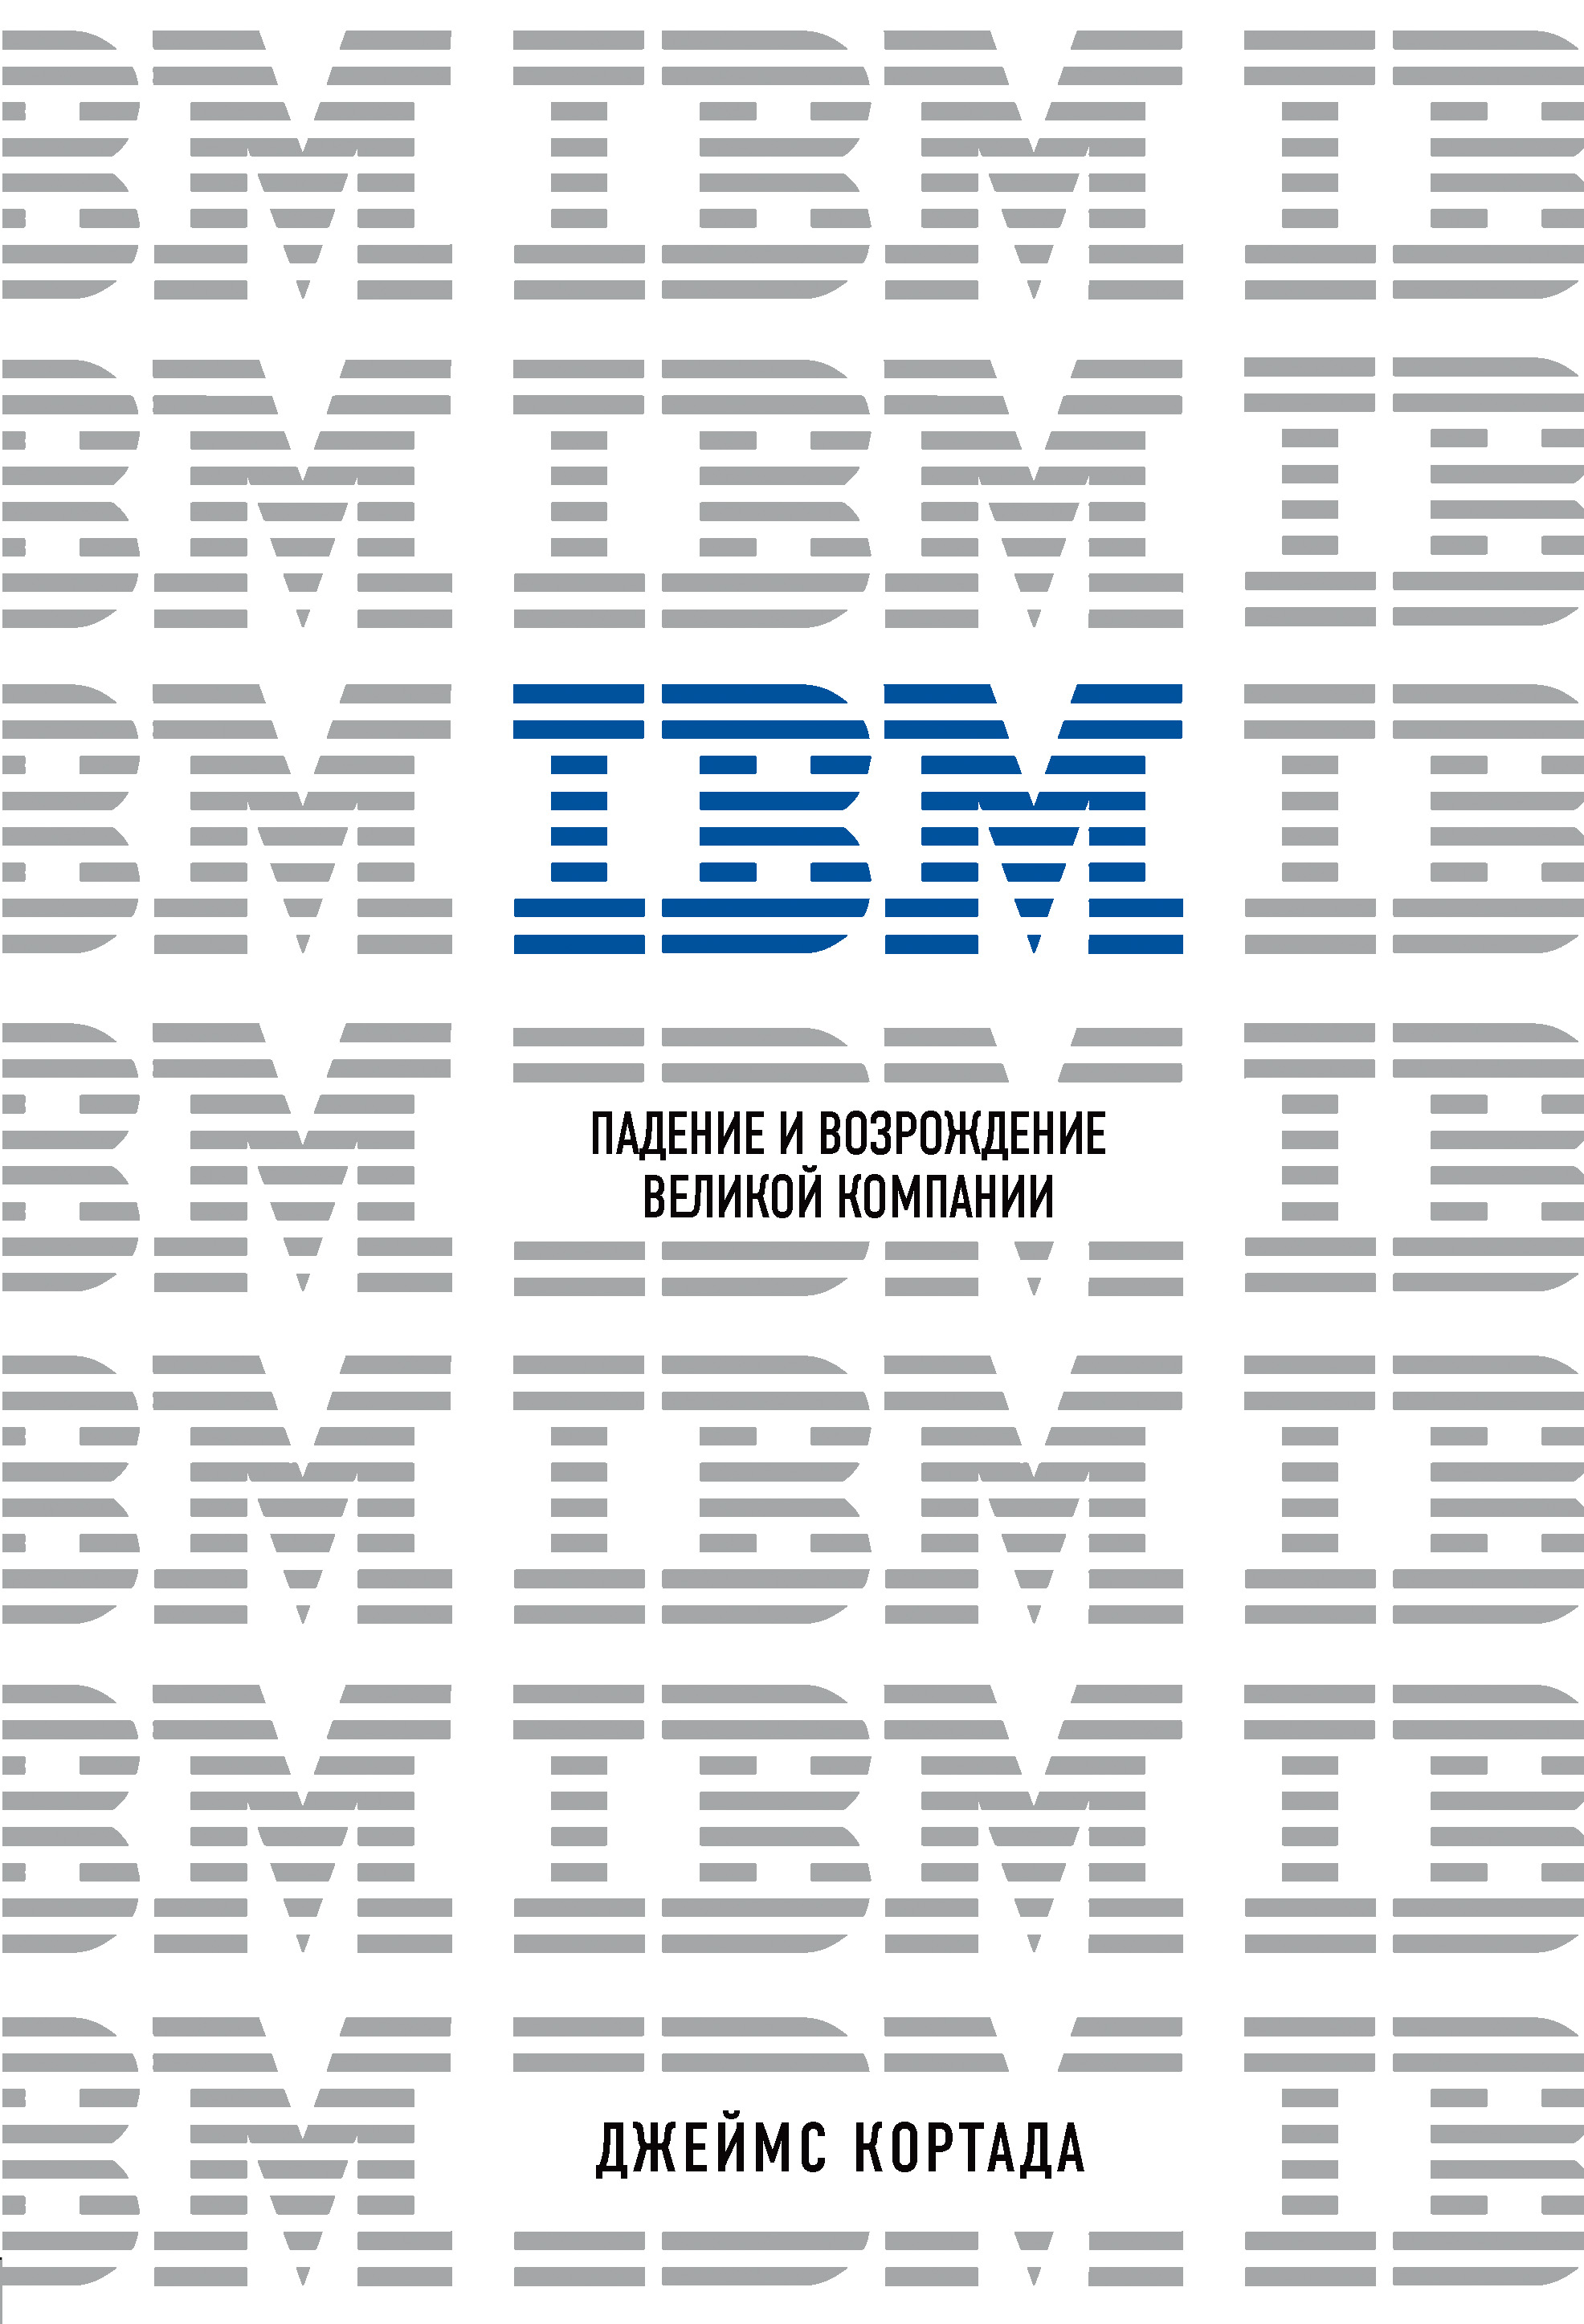 Книга Top Business Awards IBM. Падение и возрождение великой компании созданная Джеймс Кортада, Е. Смолина, Бомбора может относится к жанру бизнес-стратегии, зарубежная деловая литература, инновации в бизнесе, истории успеха, корпоративная культура, просто о бизнесе, эффективность бизнеса. Стоимость электронной книги IBM. Падение и возрождение великой компании с идентификатором 63756178 составляет 449.00 руб.